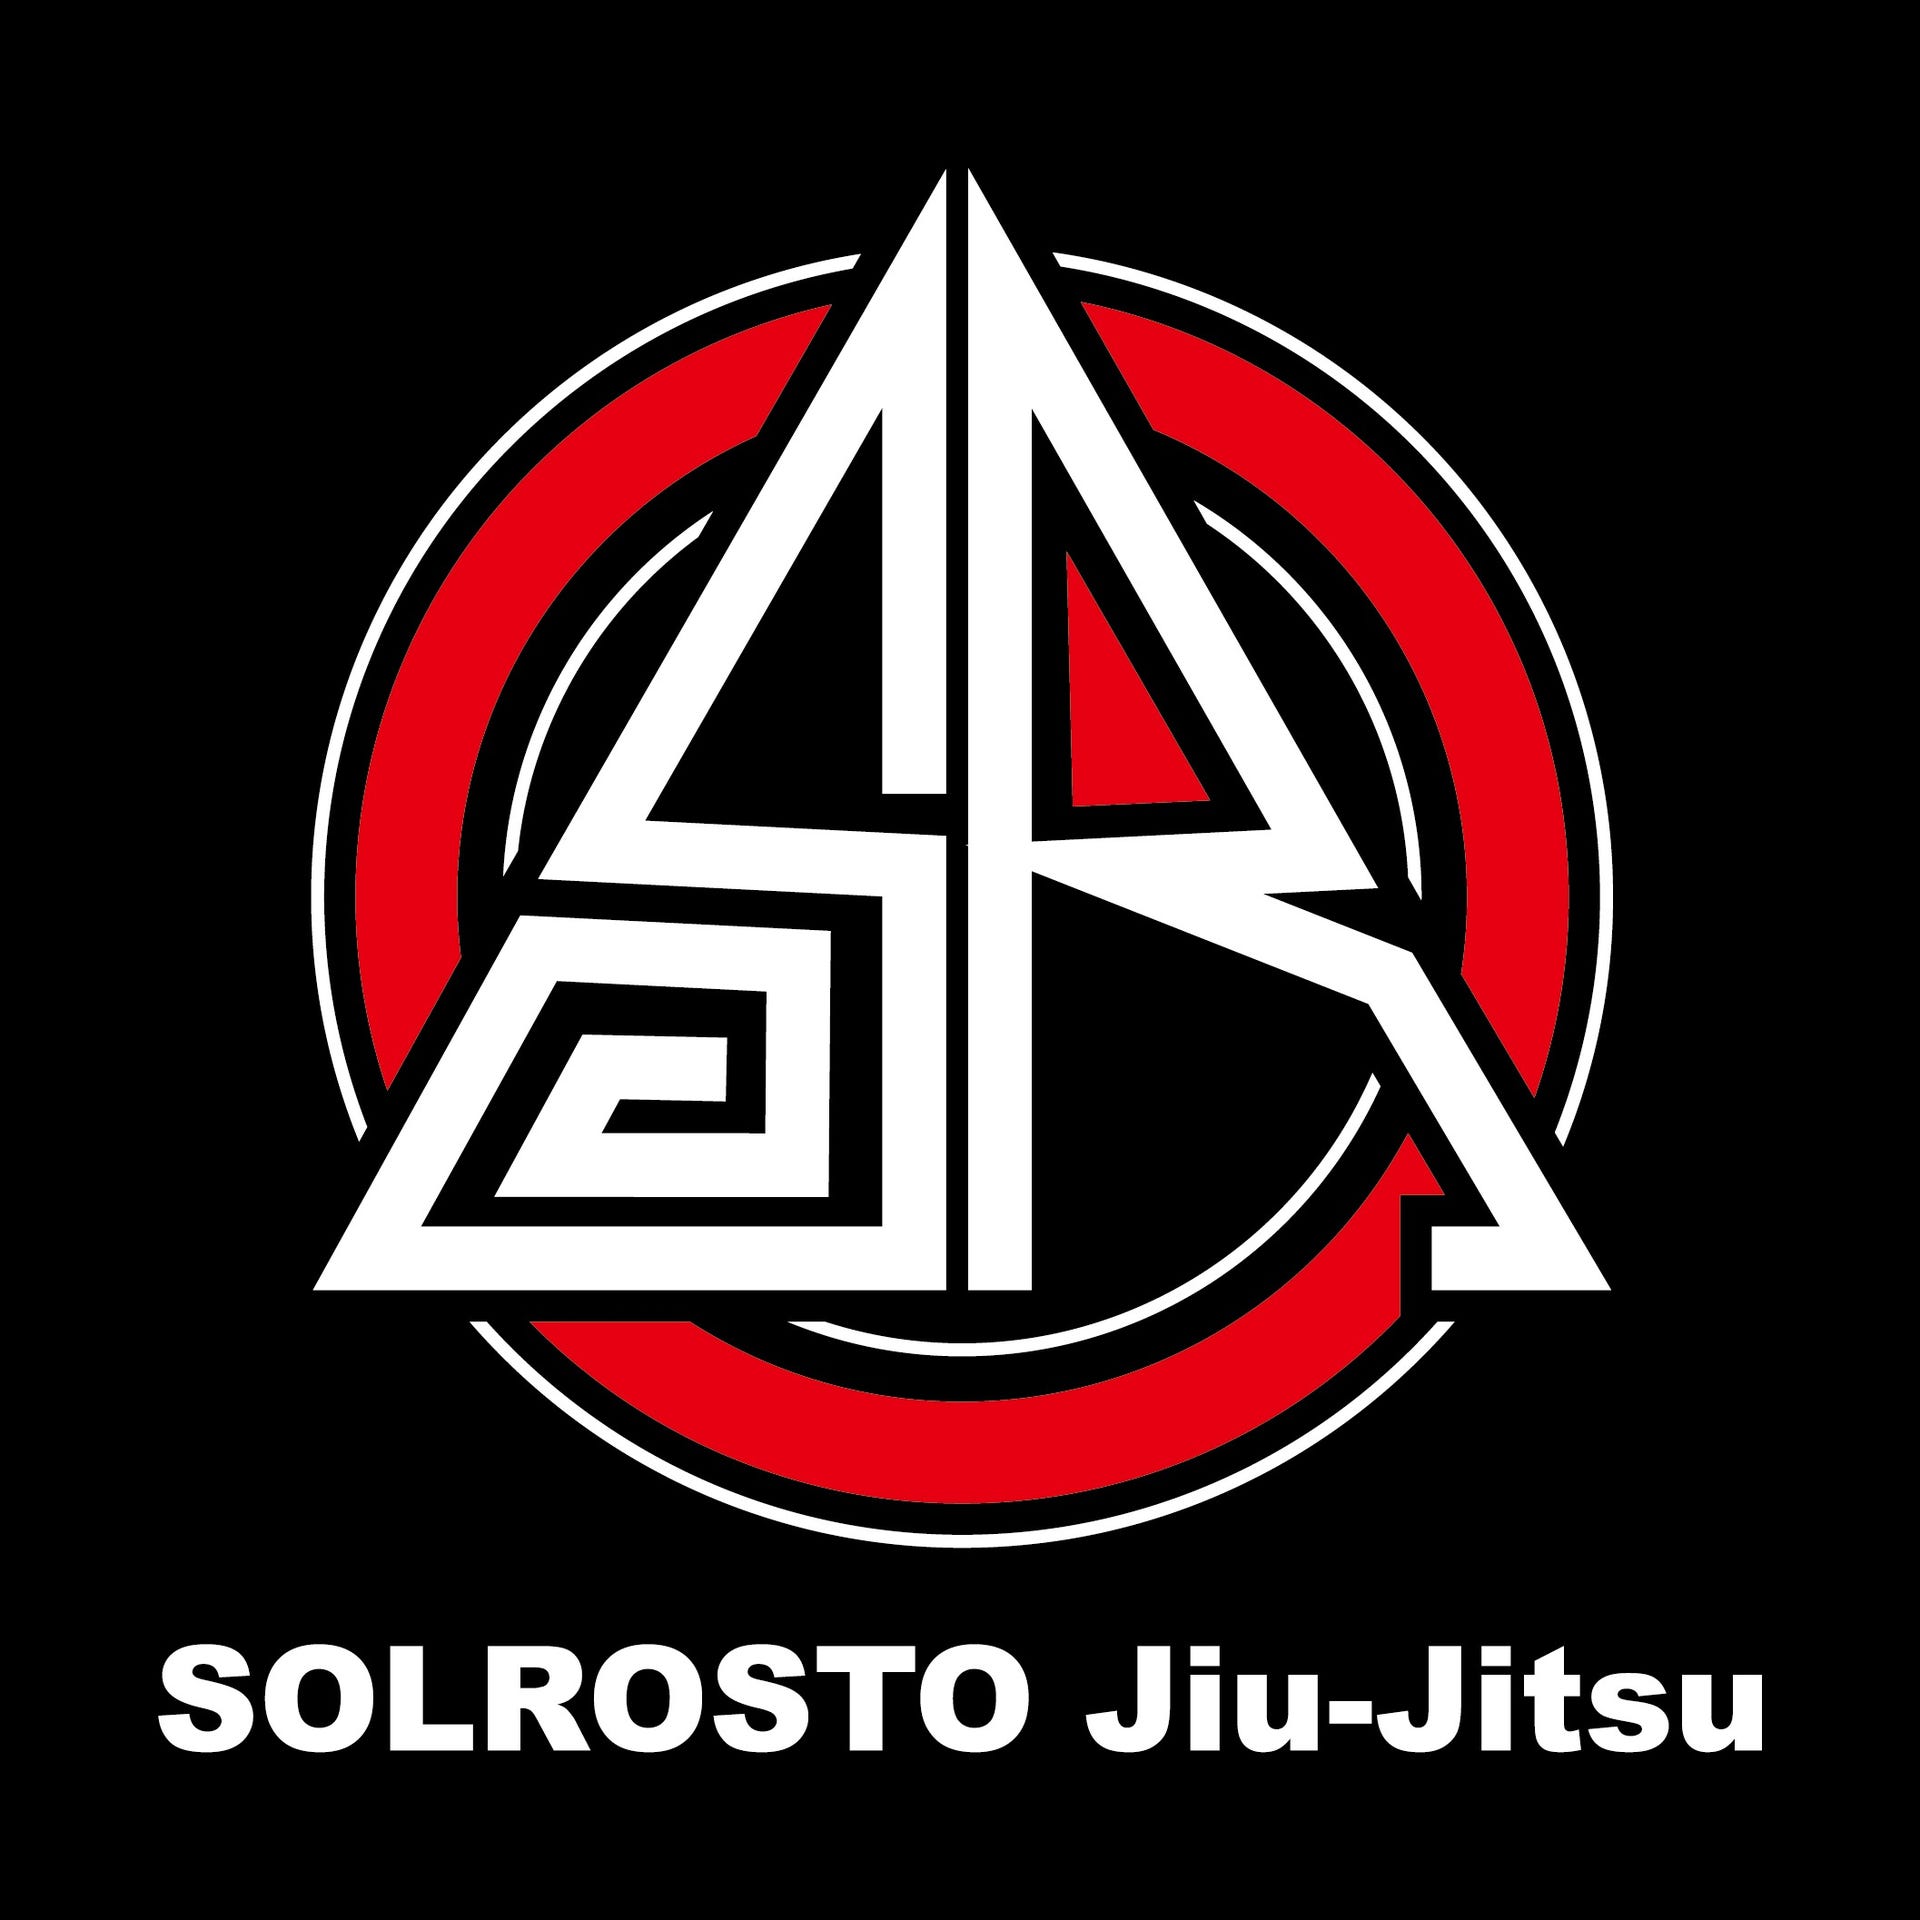 Solrosto Jiu-Jitsu